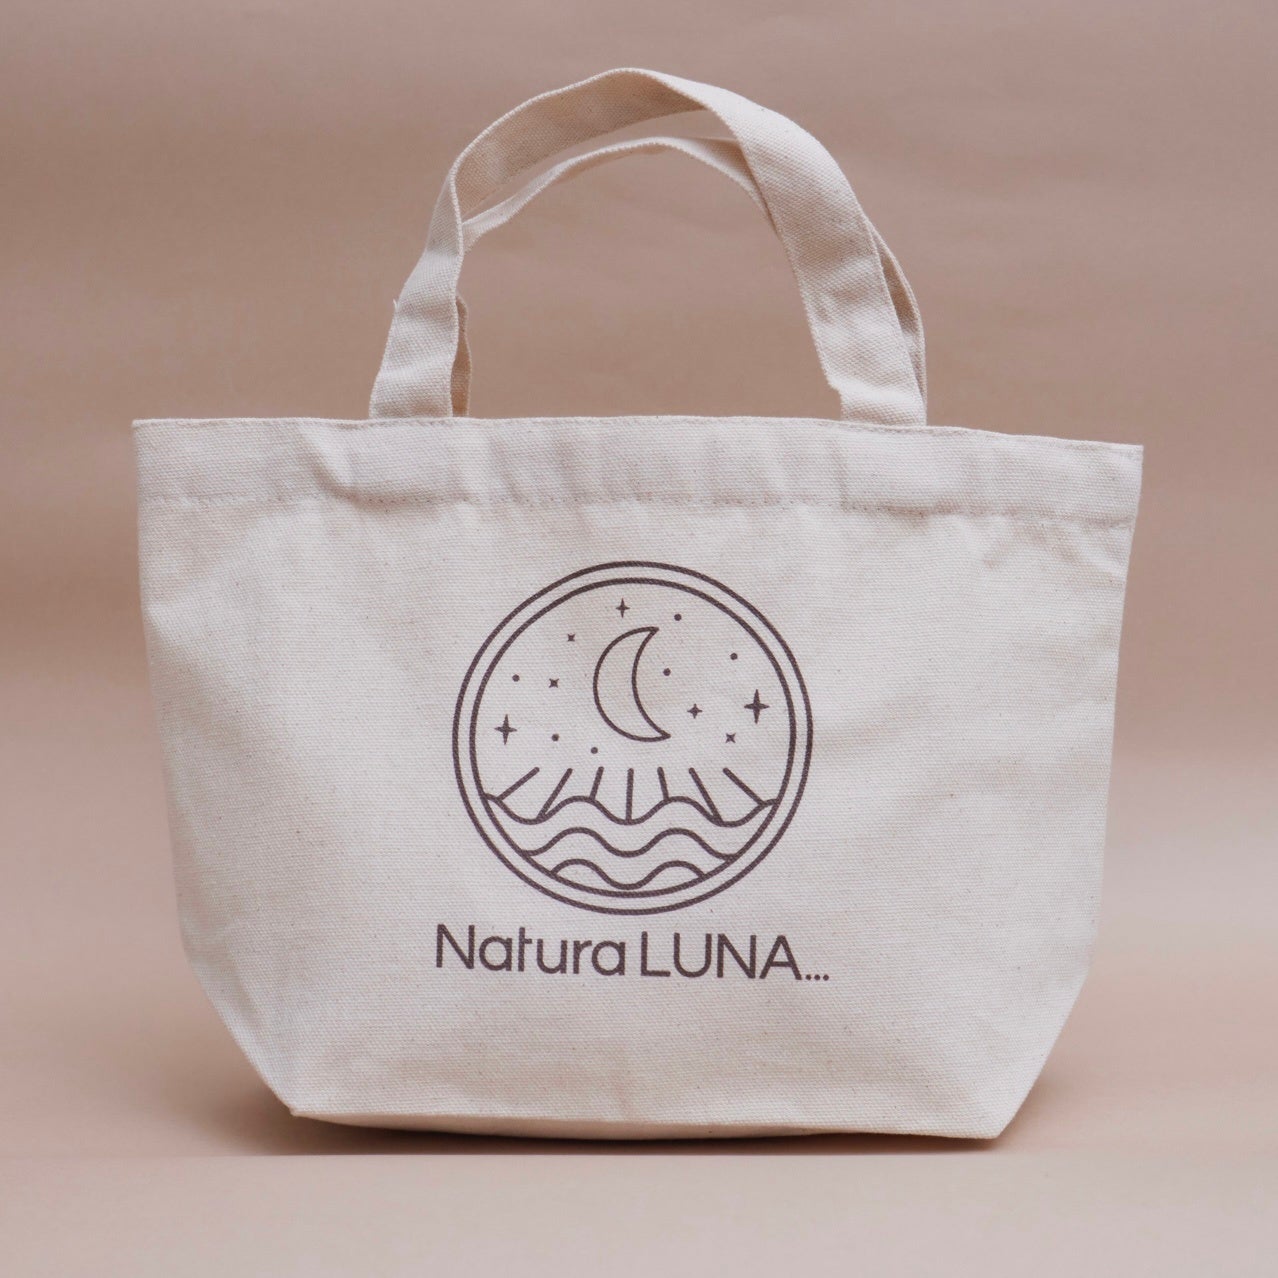 親子で使える100%天然由来スキンケアブランド「NaturaLUNA…」が1周年を記念し、伊勢丹新宿店にて初のPOP UP STOREを10/5(水)より開催のサブ画像3